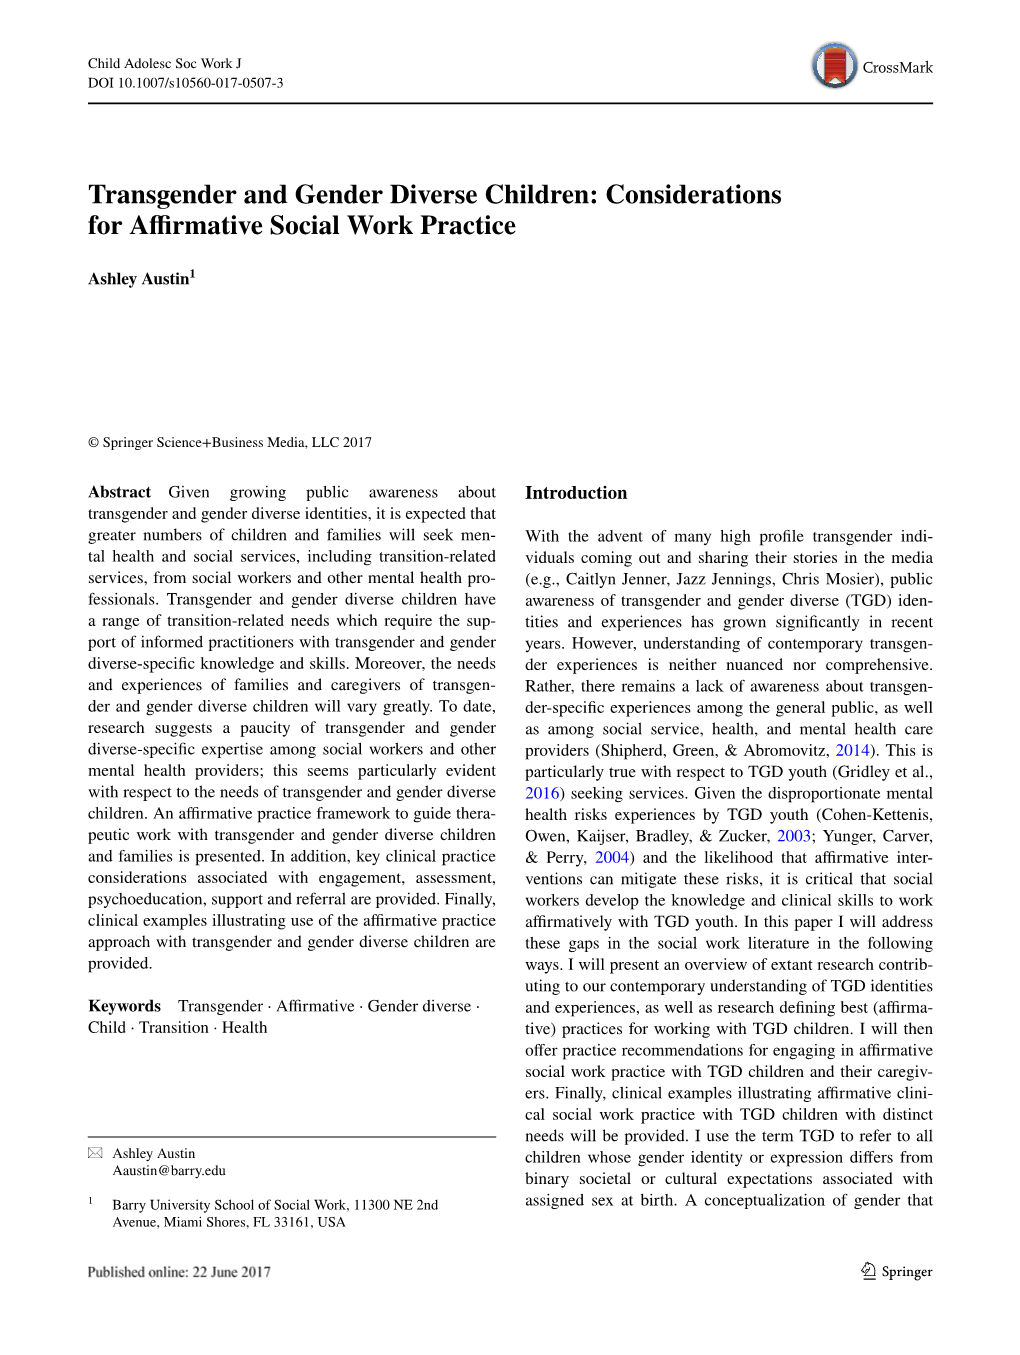 Transgender and Gender Diverse Children: Considerations for Affirmative Social Work Practice